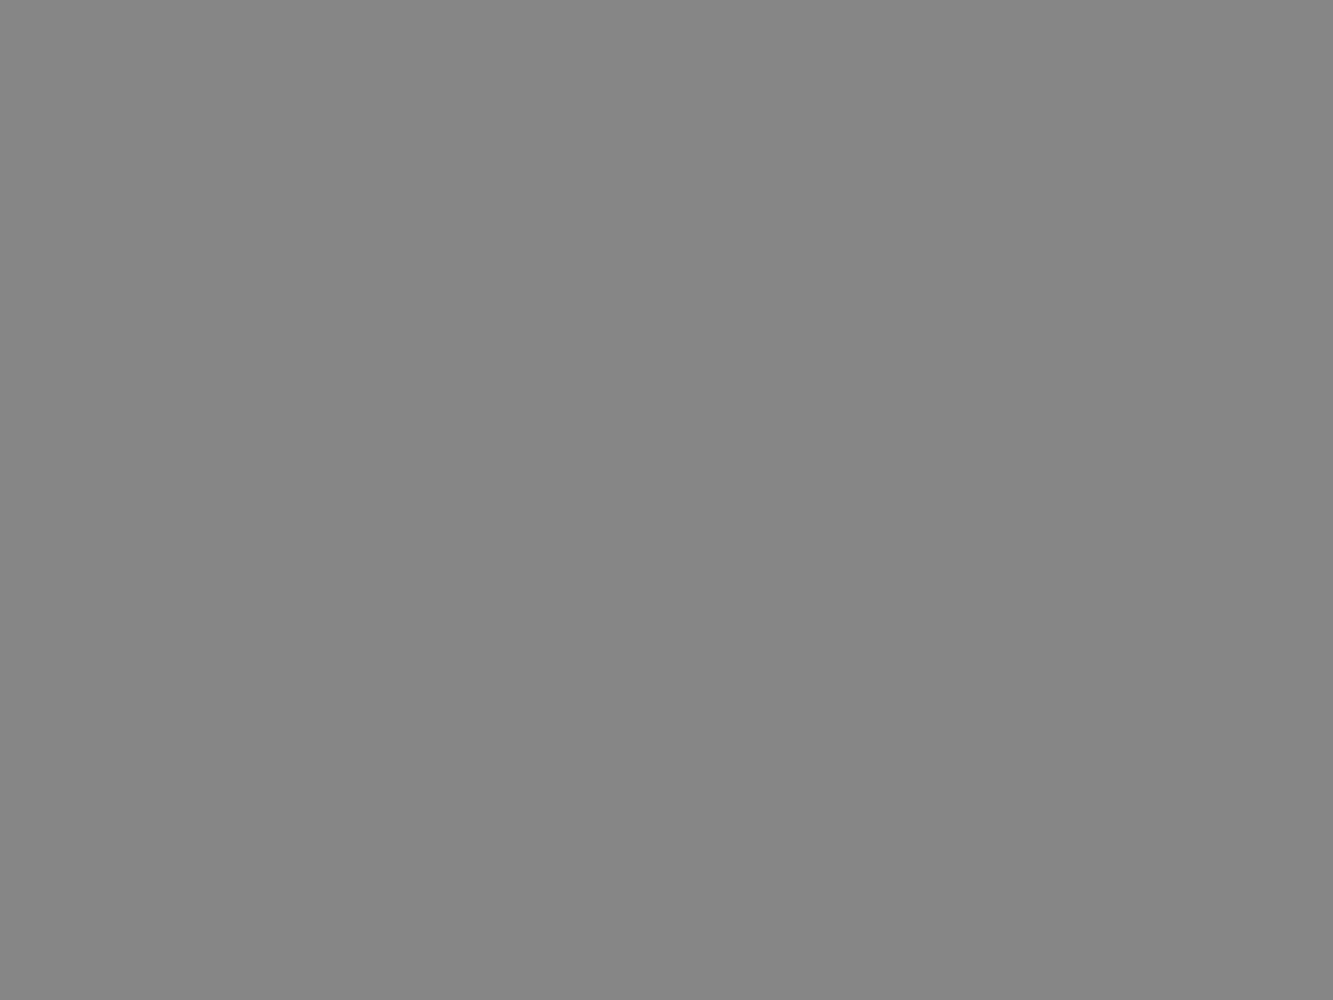 Делегаты из СССР во время выноса Государственного флага СССР на всемирной выставке «Экспо-67» в Монреале, Канада. 1967. Фотография: Александр Батанов / ТАСС